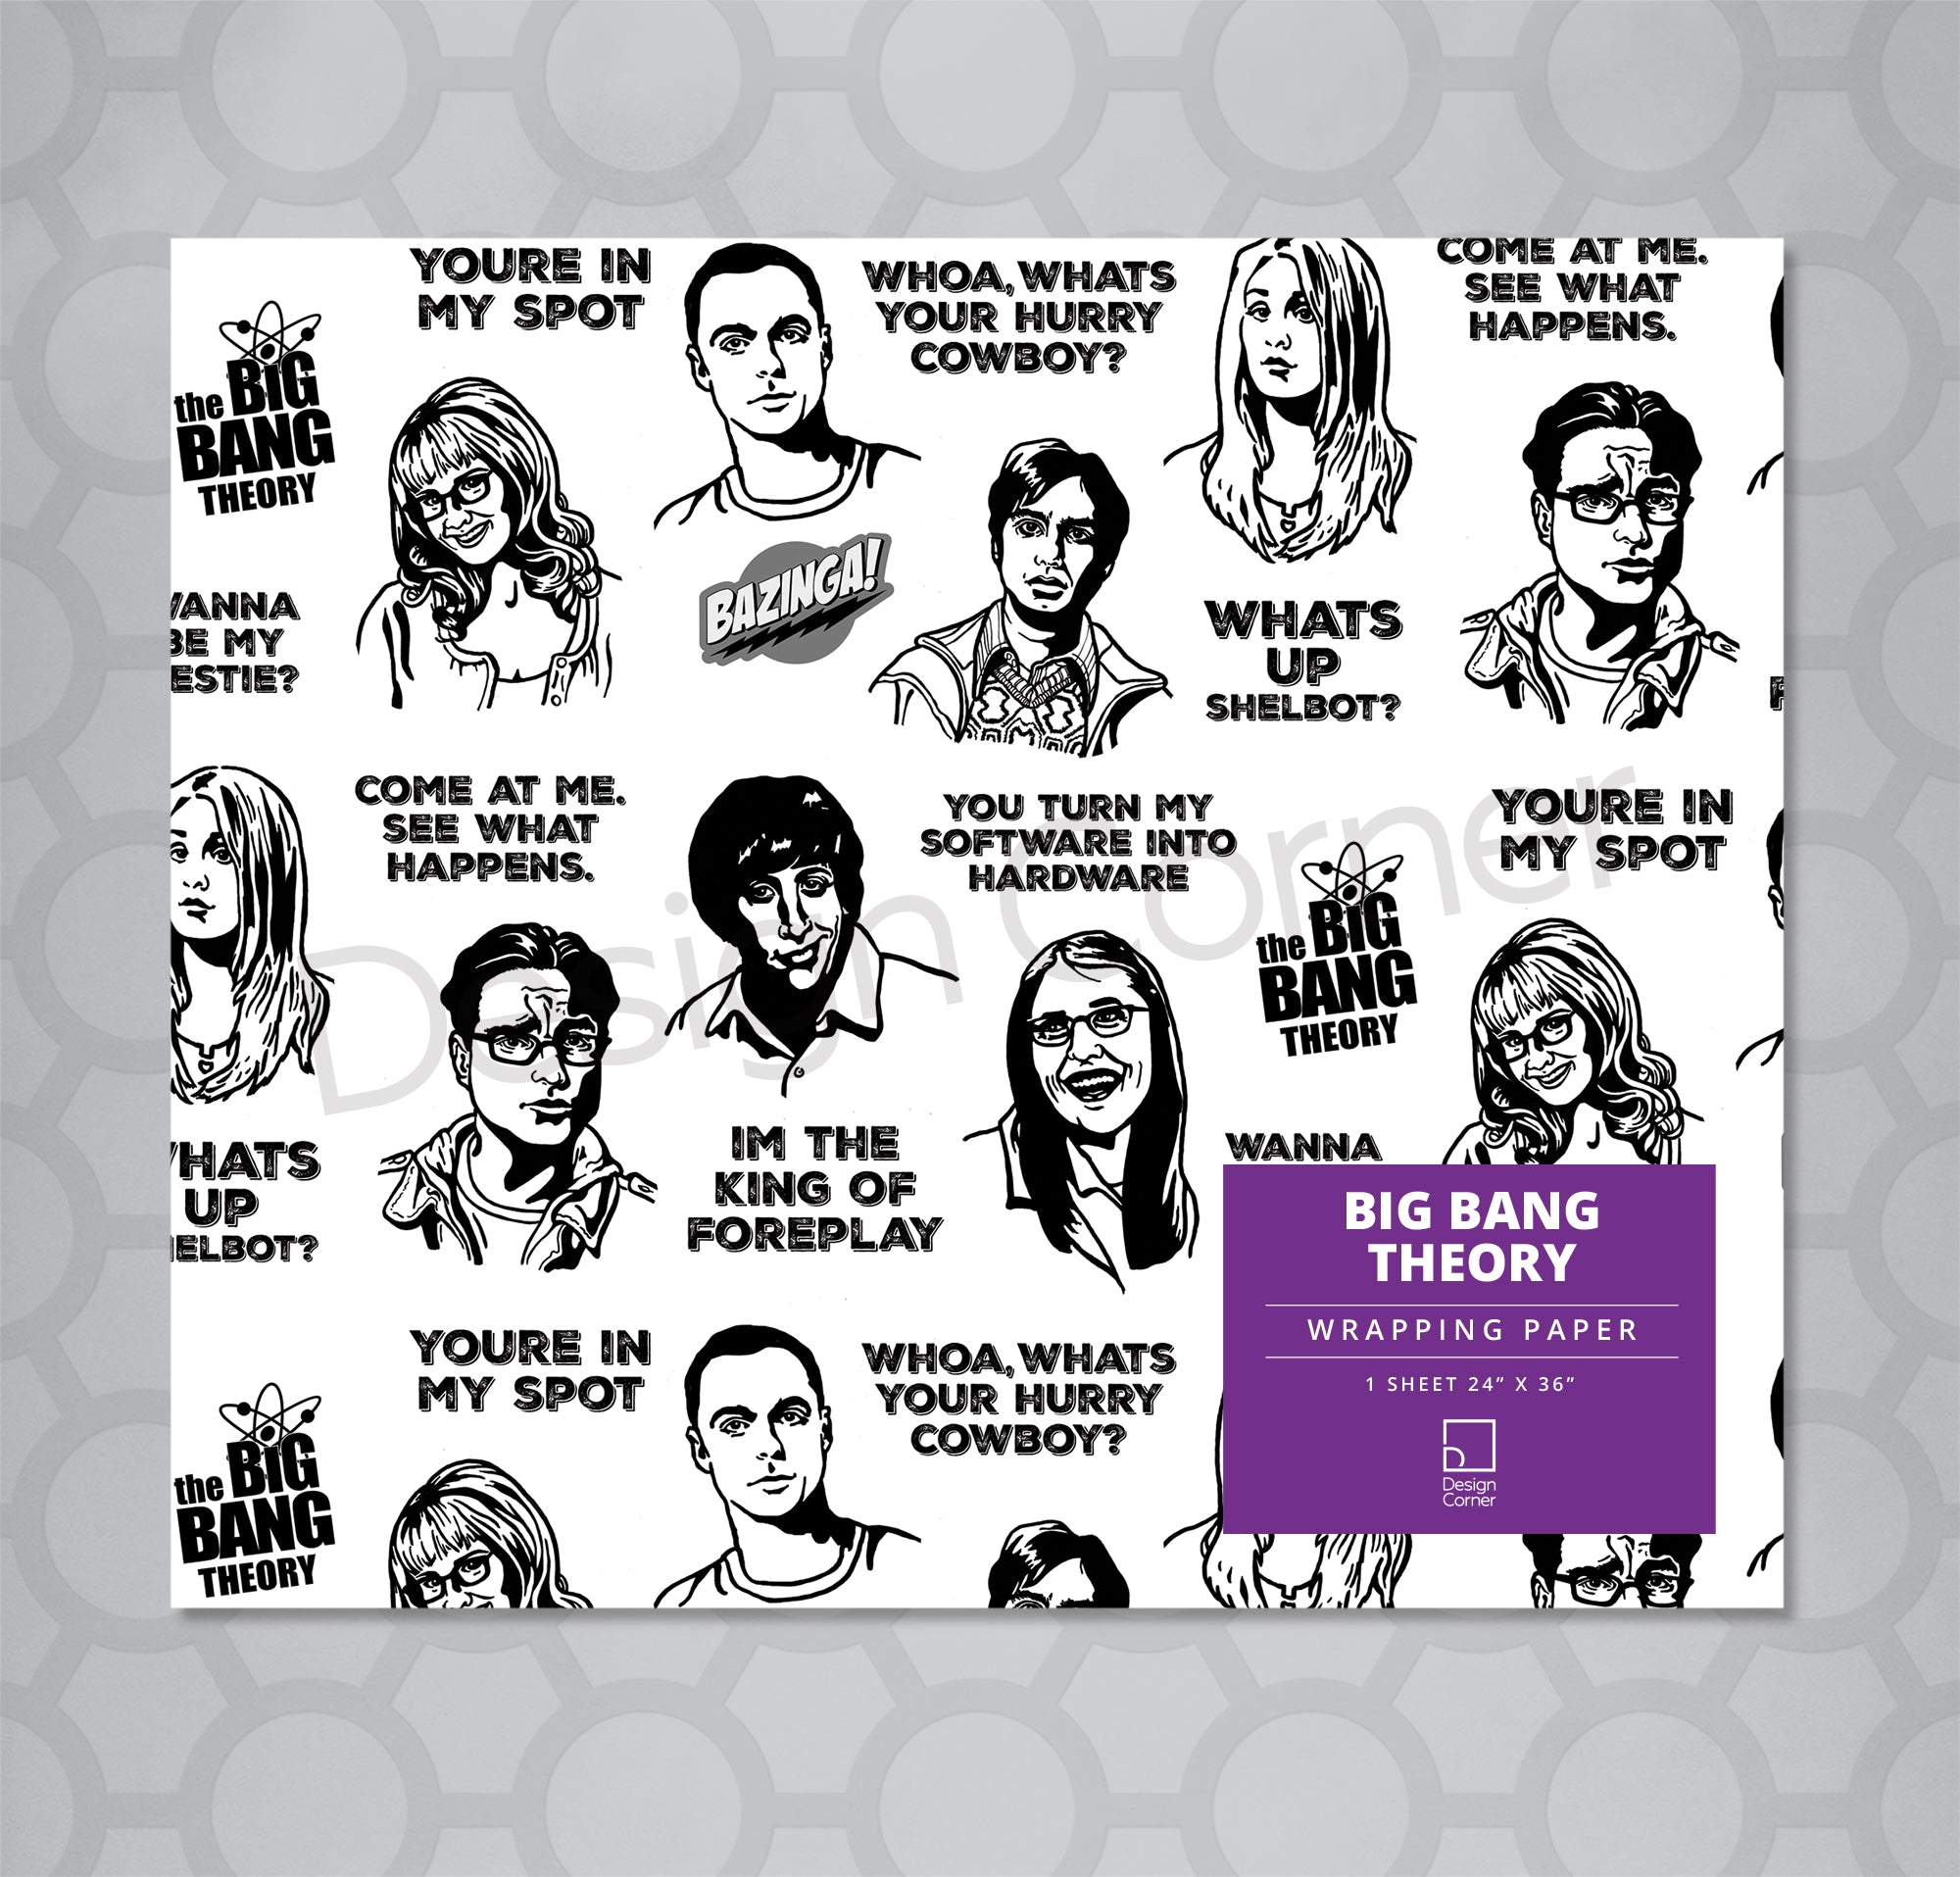 Big Bang Theory Gift Wrap 24"x36" Sheet